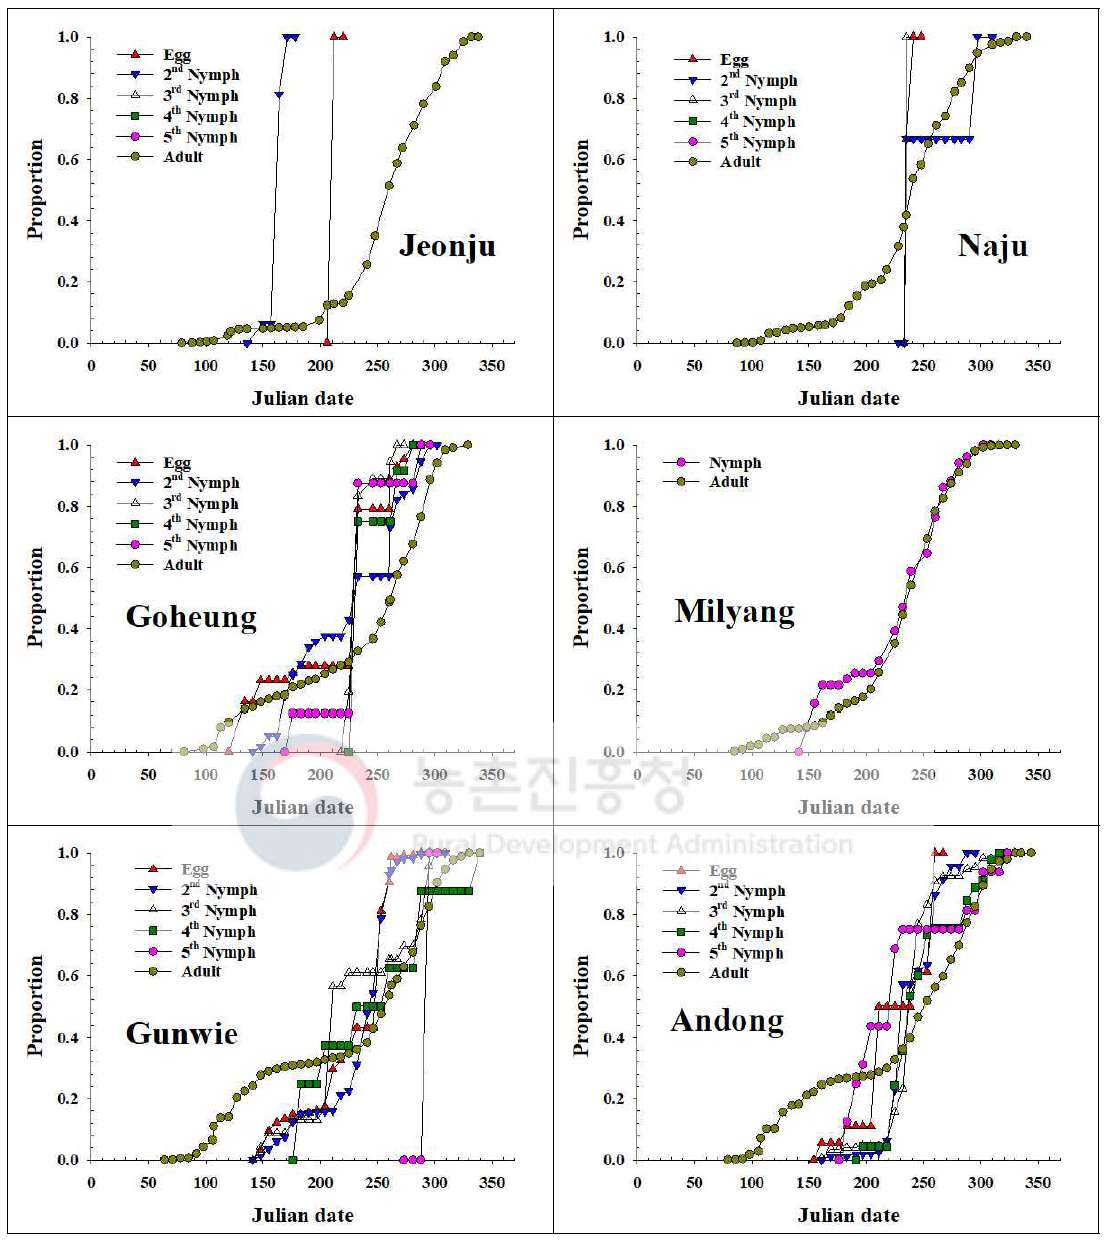 내륙지역 톱다리개미허리노린재 발육단계별 개체수 누적증가 비교(2019)